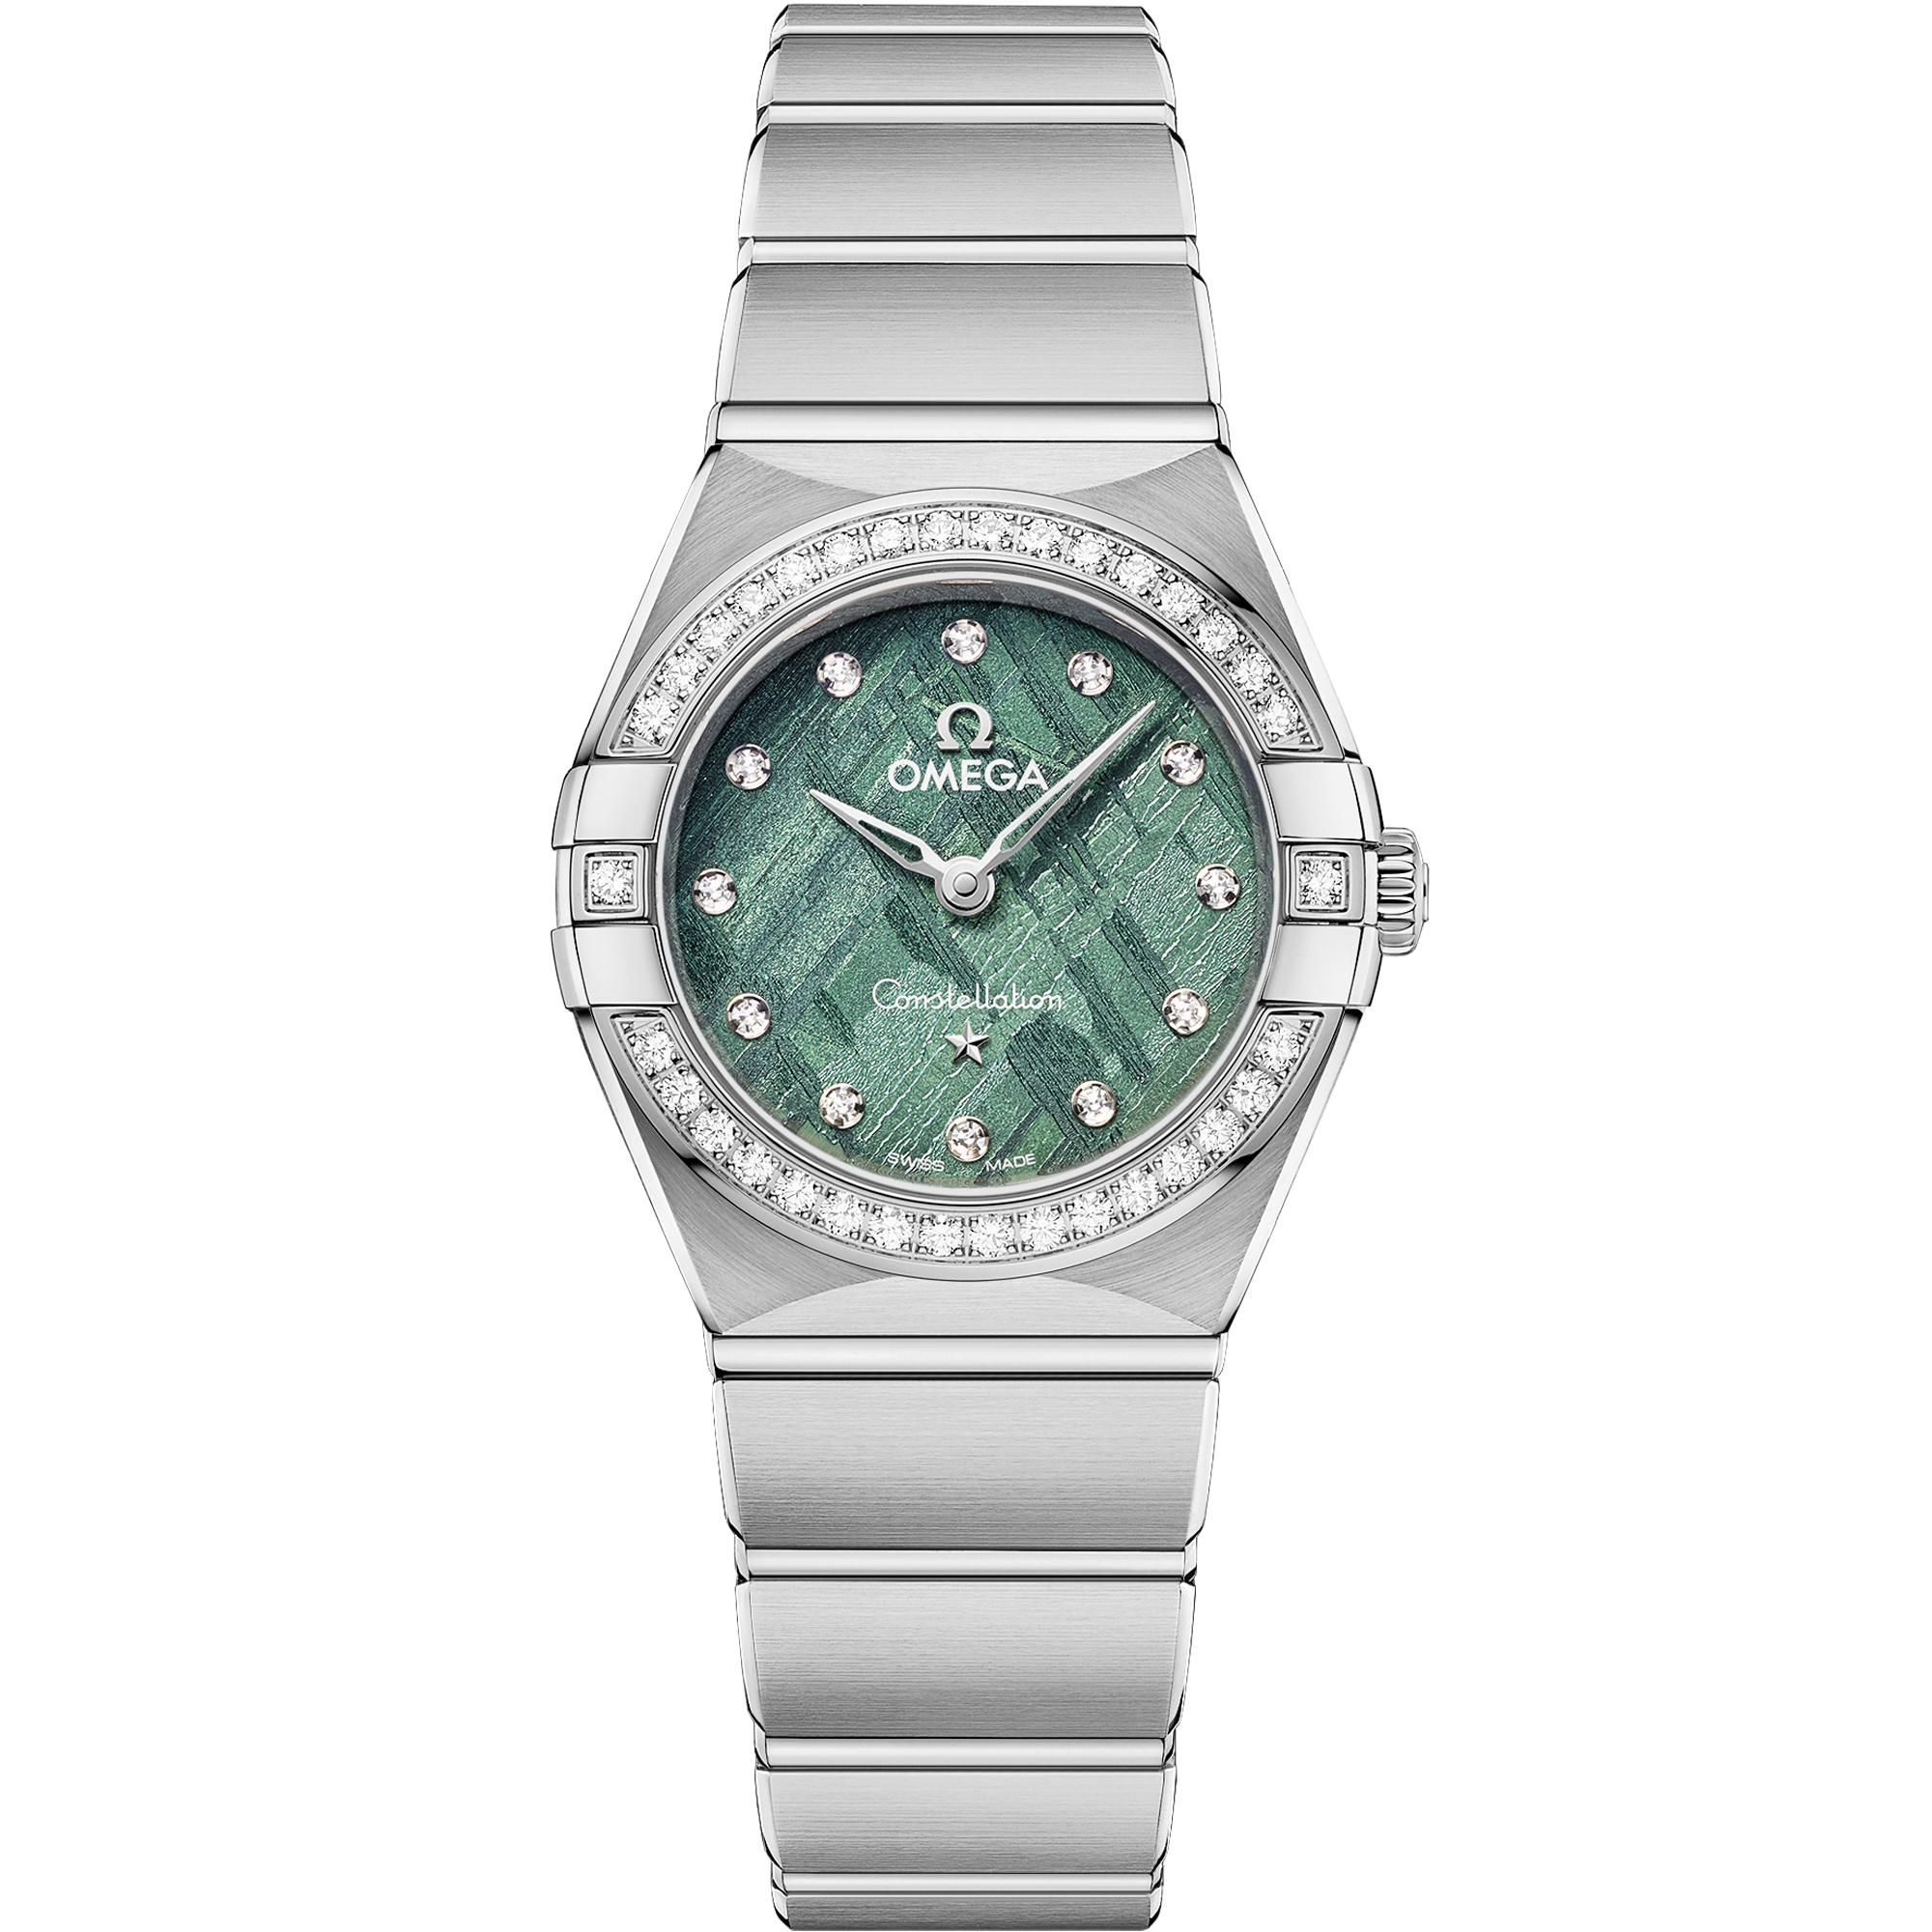 Relógio com mostrador Verde com caixa em Aço e Constellation 25 mm, Aço em Aço - 131.15.25.60.99.001 em Aço bracelet